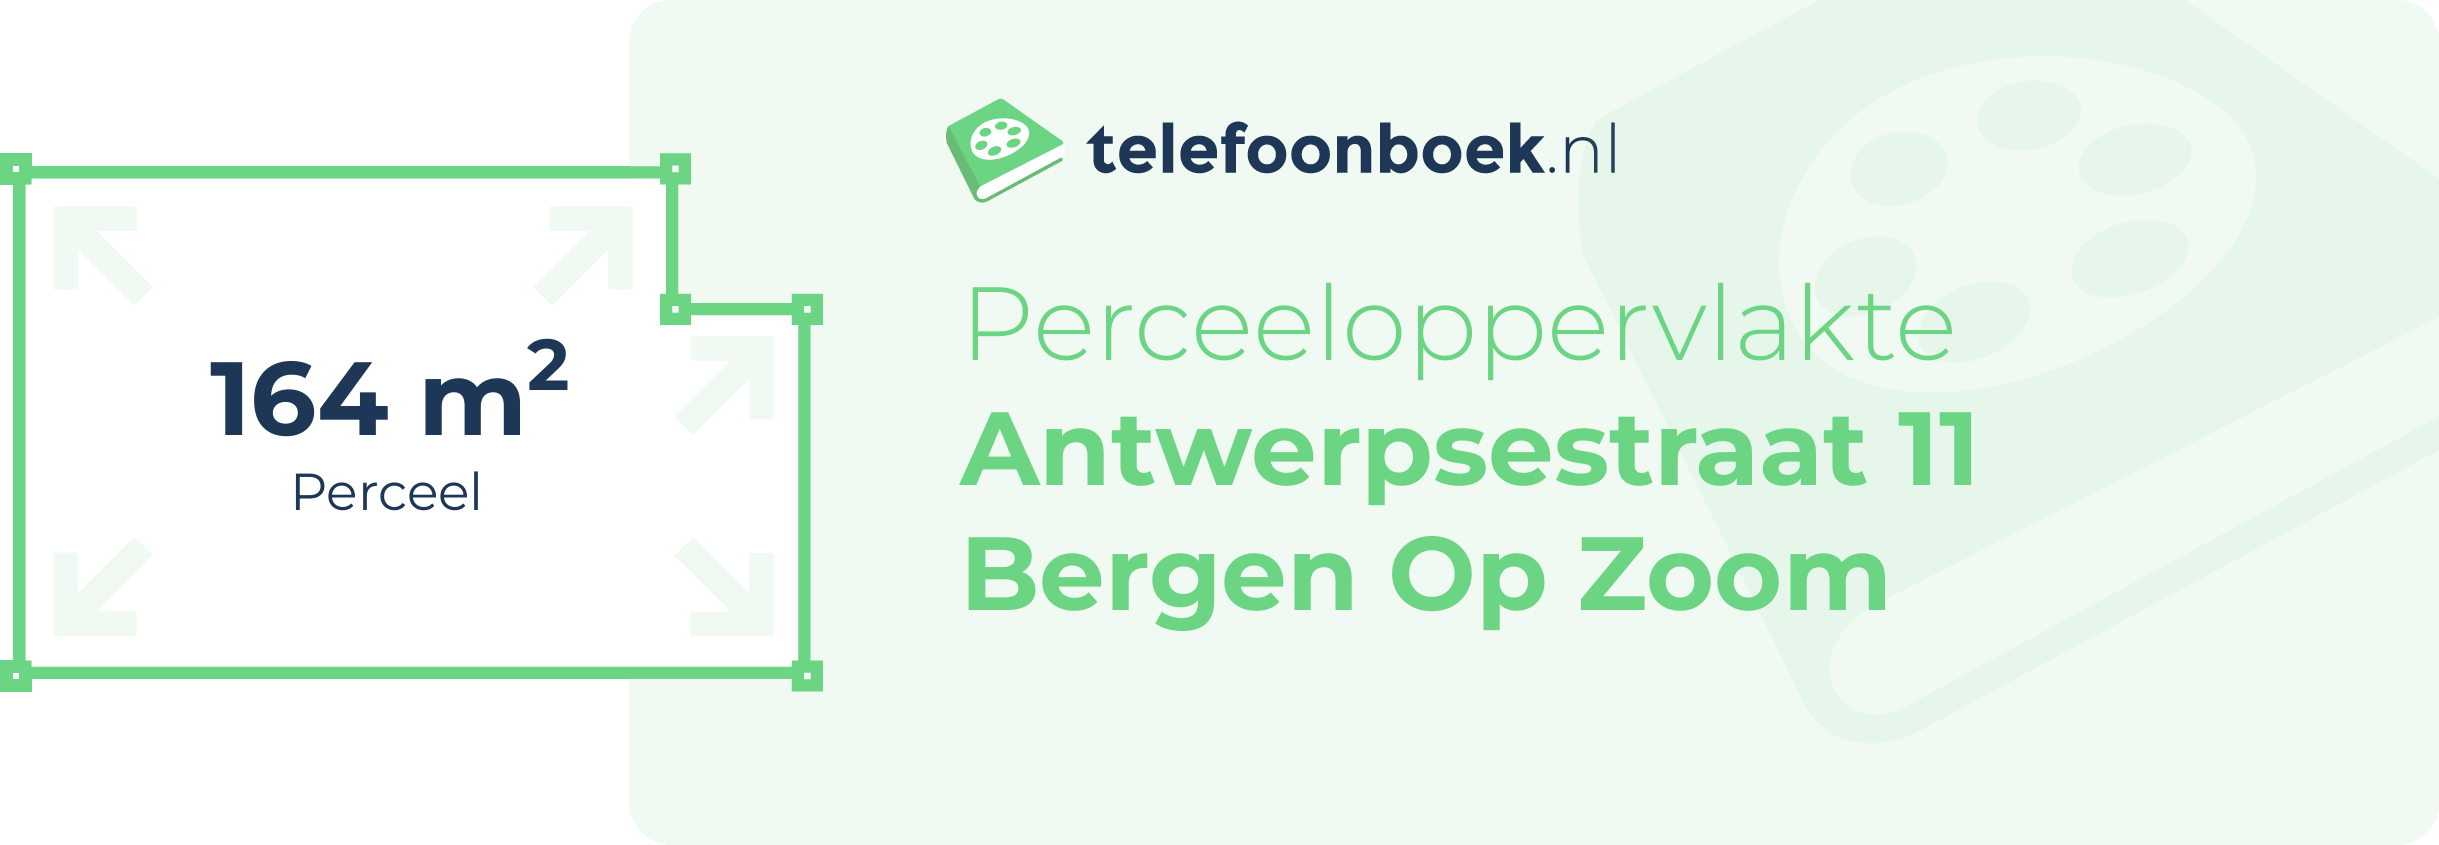 Perceeloppervlakte Antwerpsestraat 11 Bergen Op Zoom